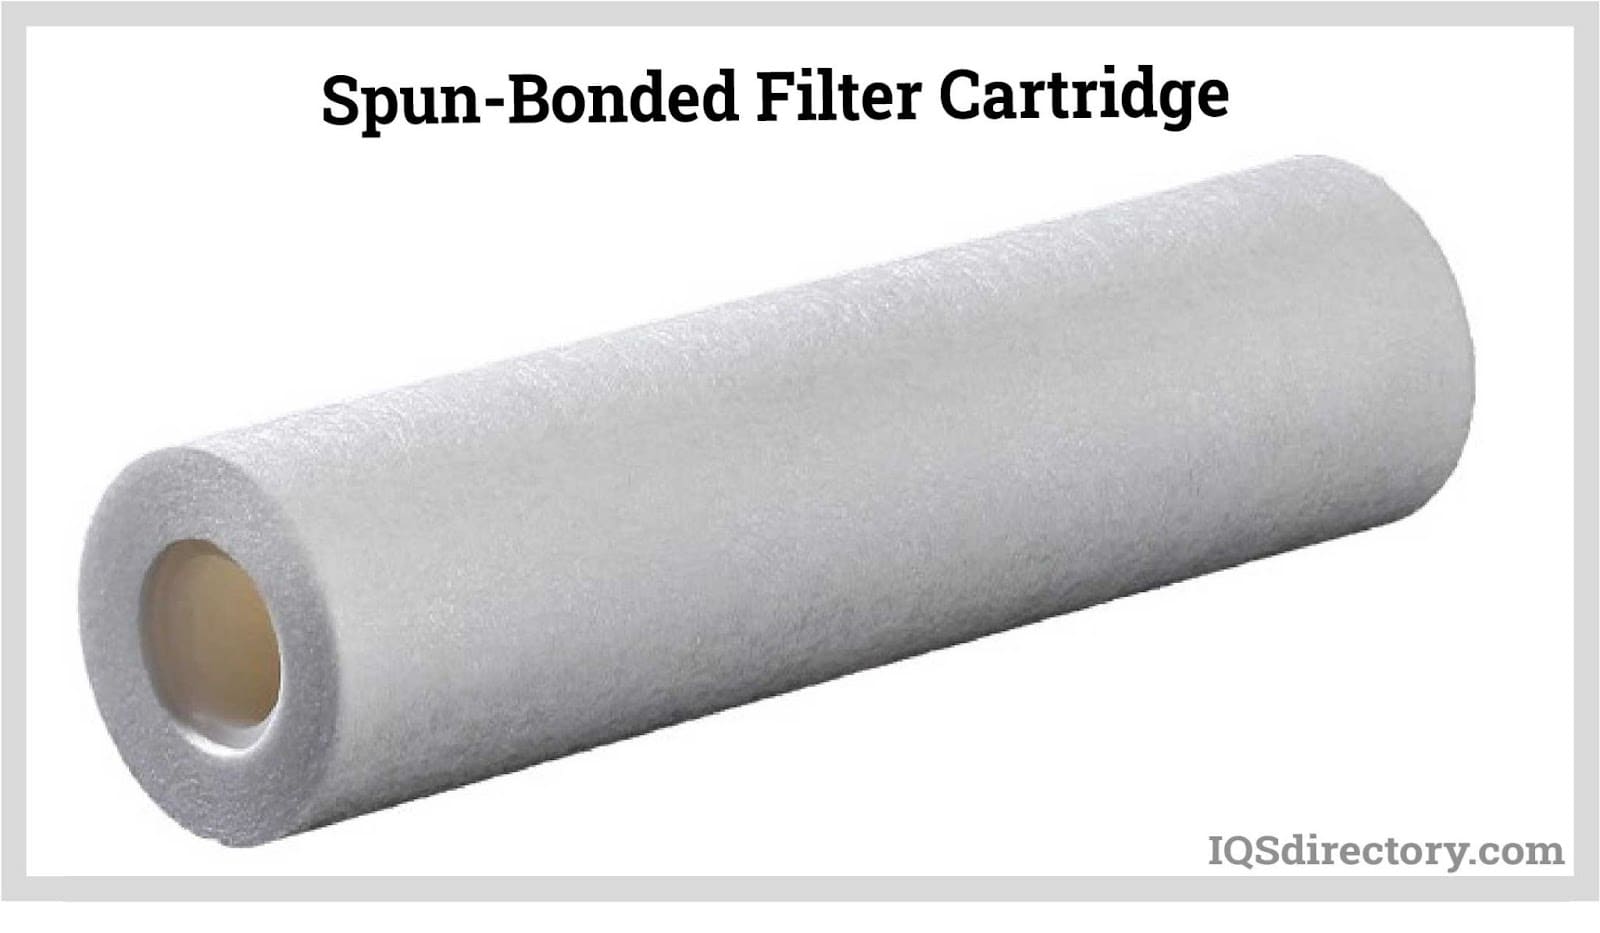 Spun-Bonded Filter Cartridge